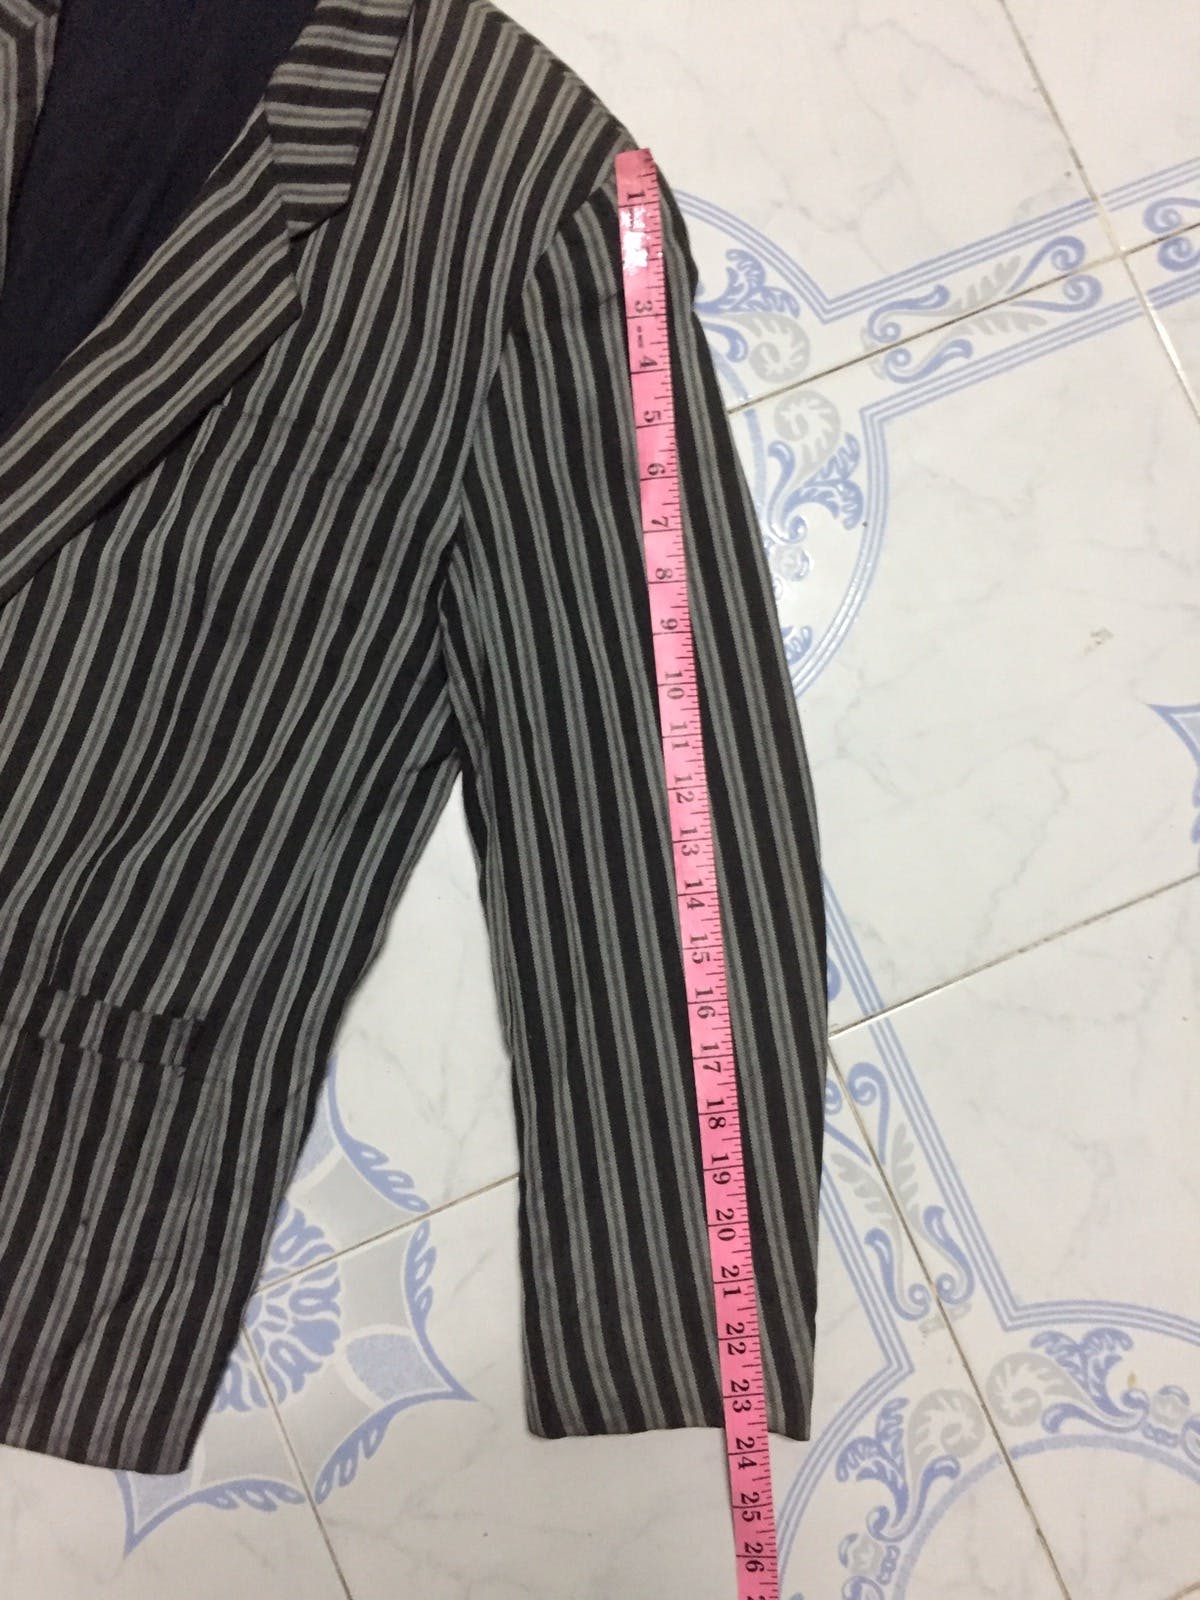 Kenzo Zebra Stripes Jacket Coat Made in Japan - 25